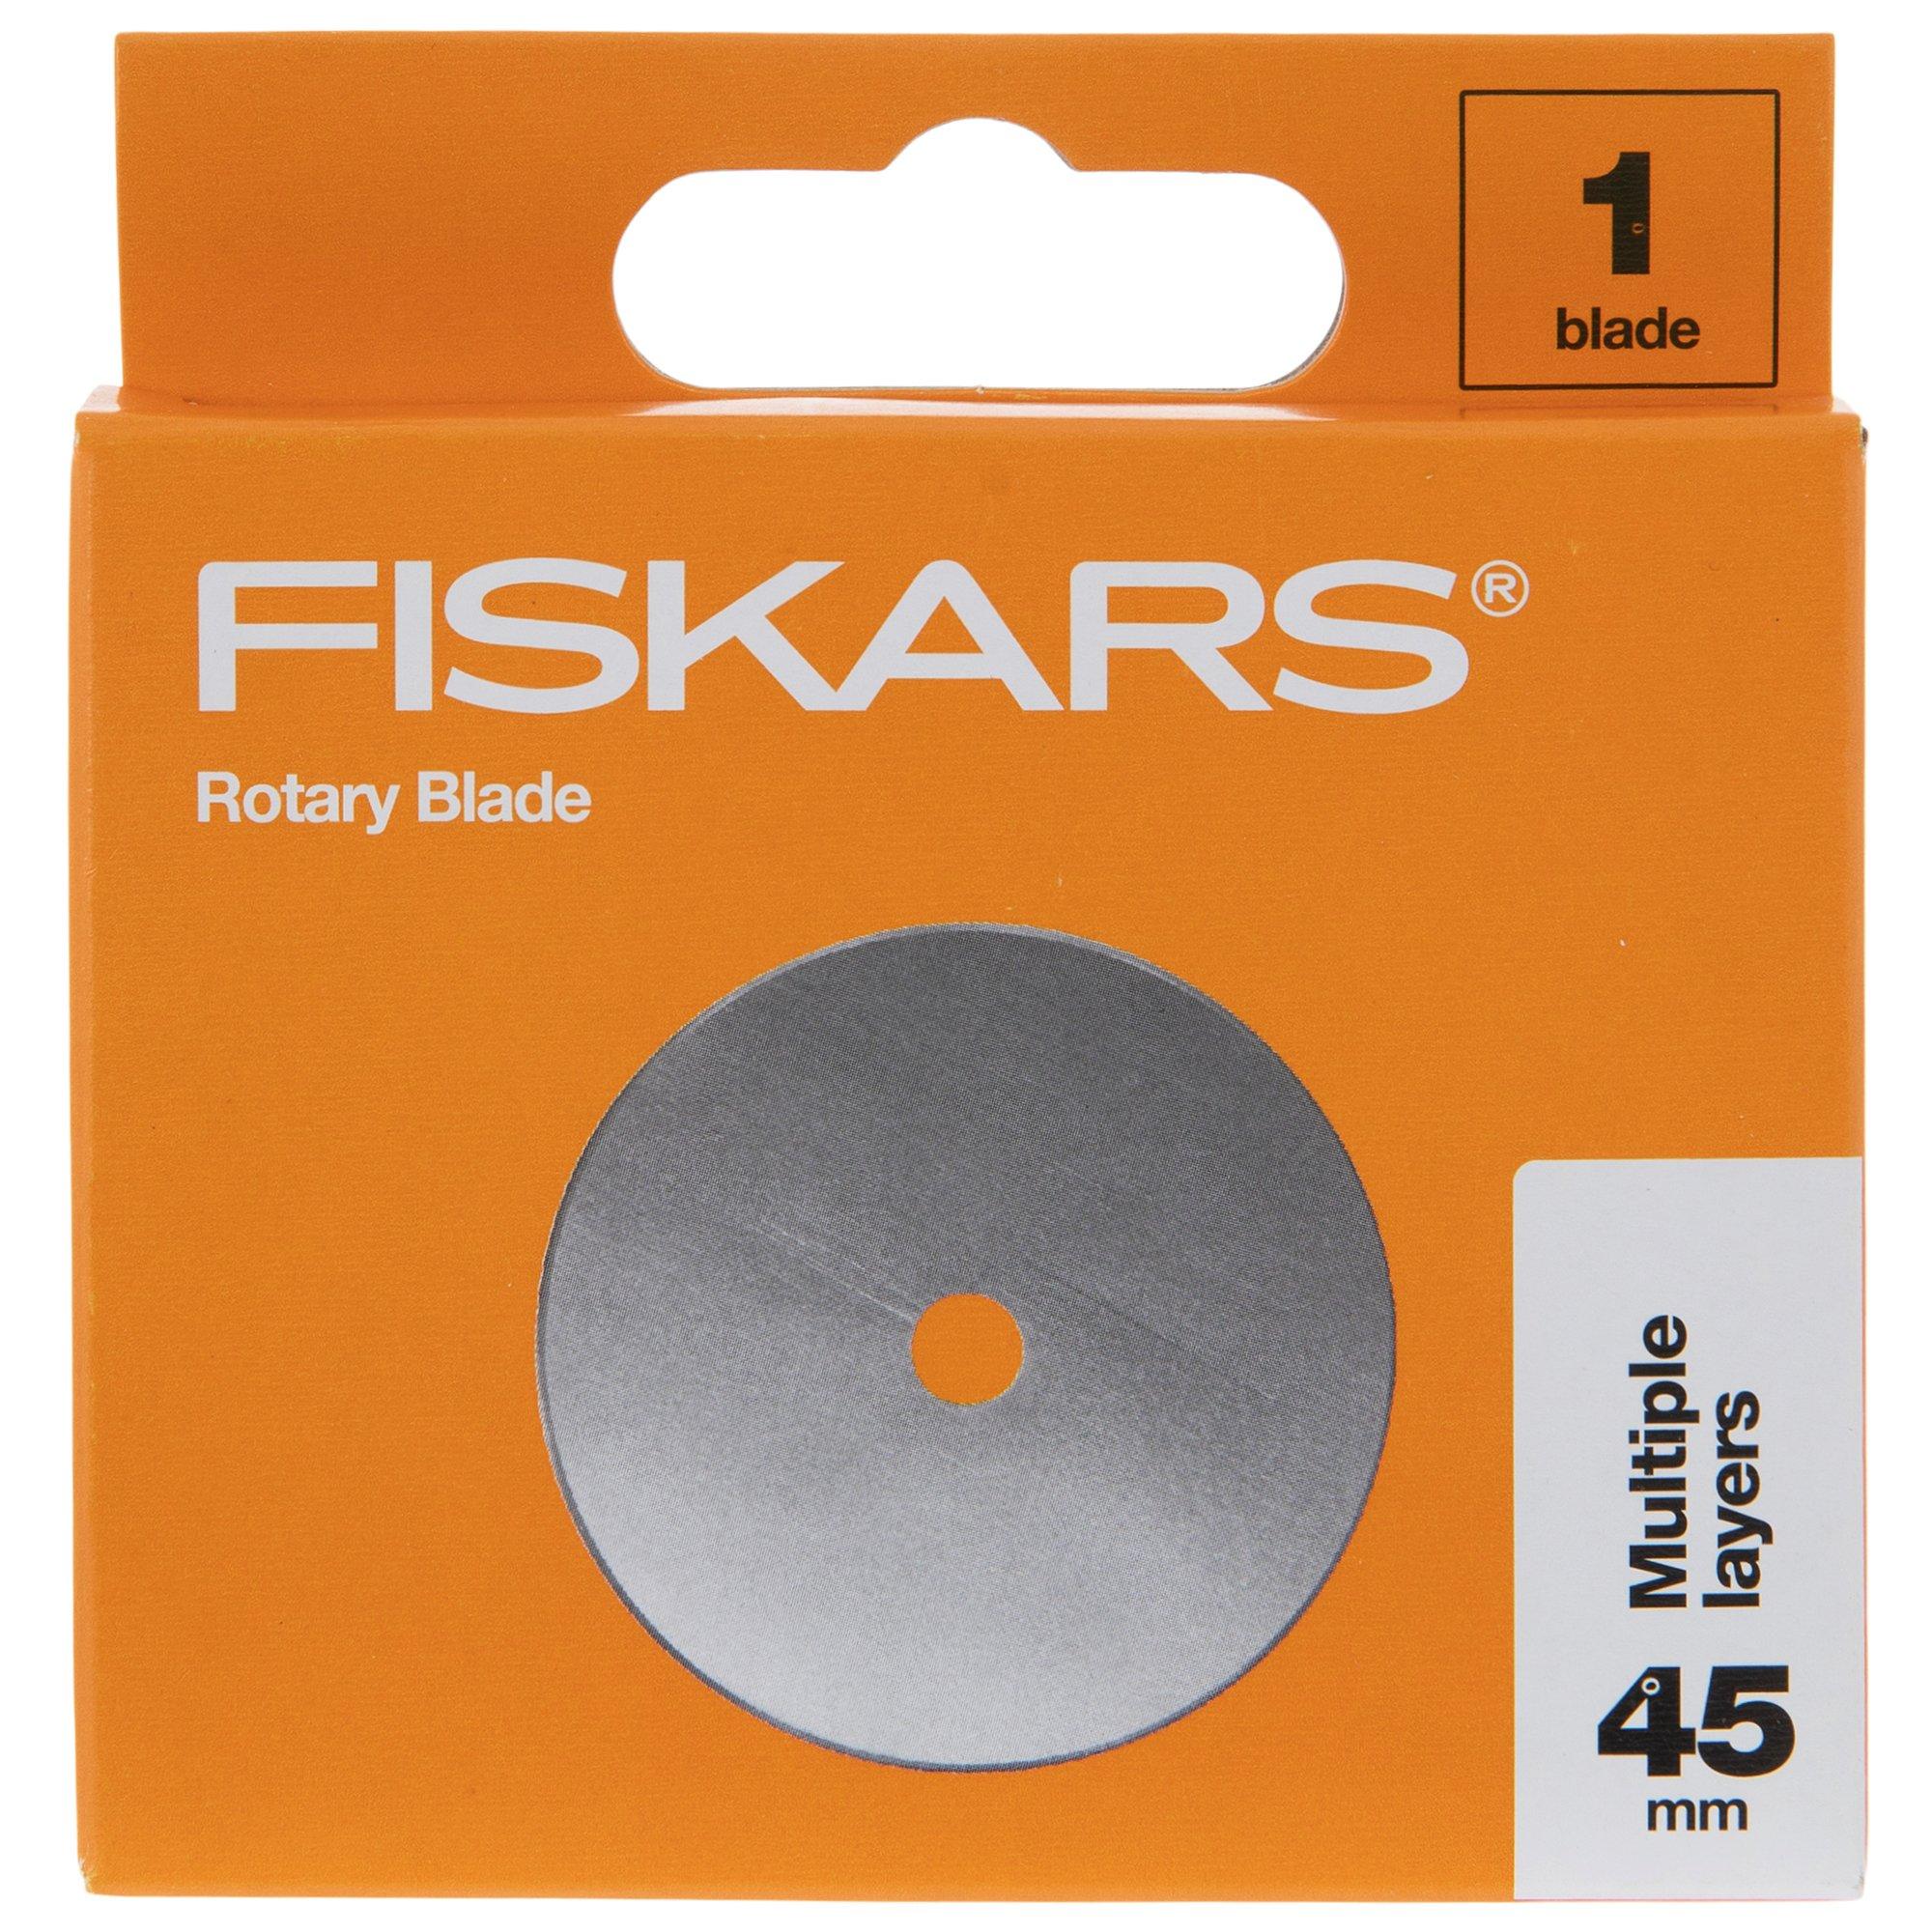 Fiskars Titanium Comfort Stick Rotary Cutter 45mm by Fiskars